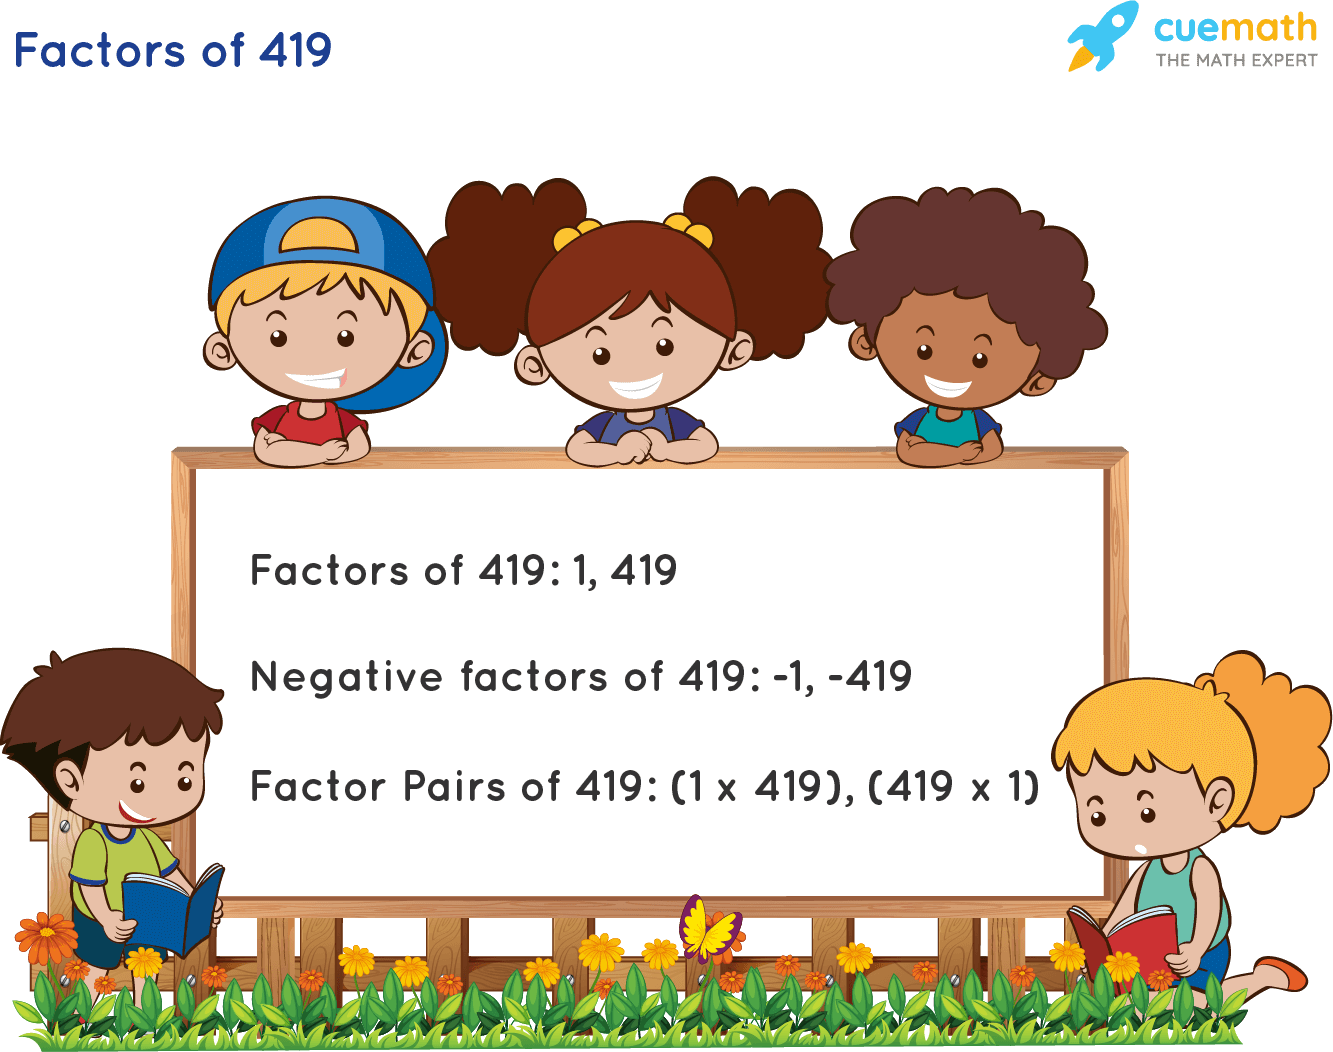 Factors of 419